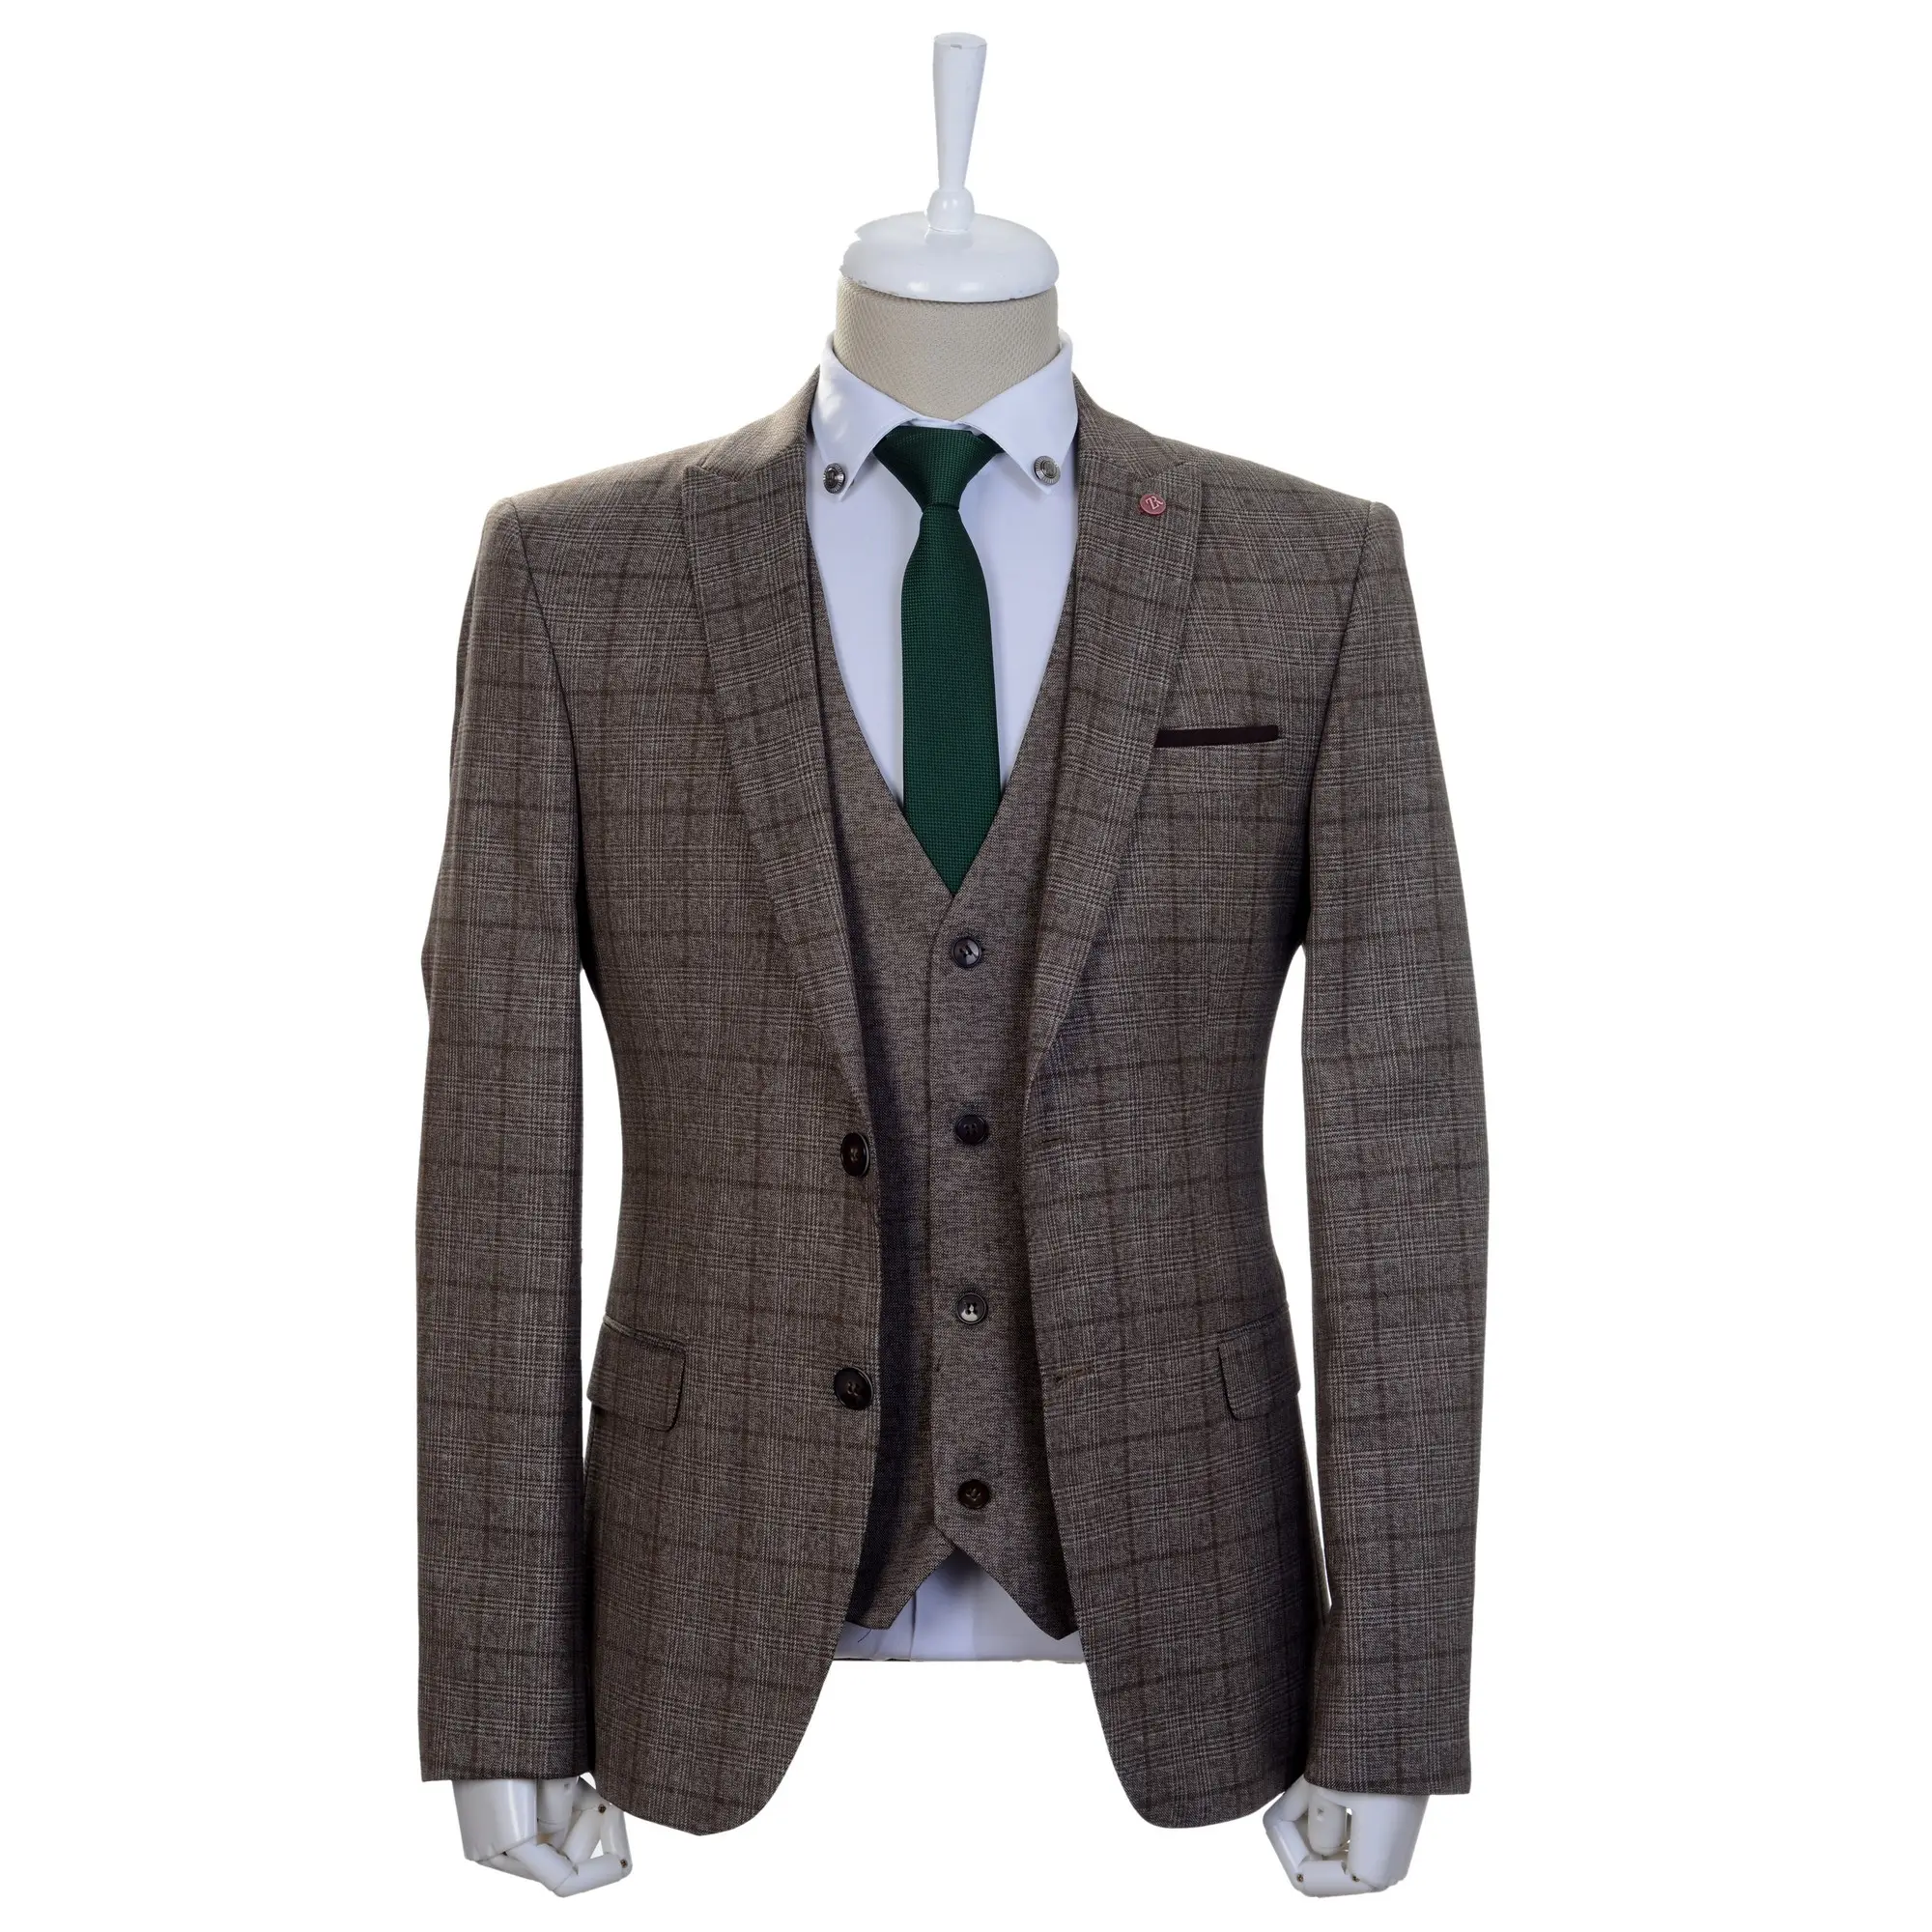 पुरुषों के फैशन के लिए नए आगमन प्रथम श्रेणी के सस्ते और उच्च गुणवत्ता वाले पुरुष सूट